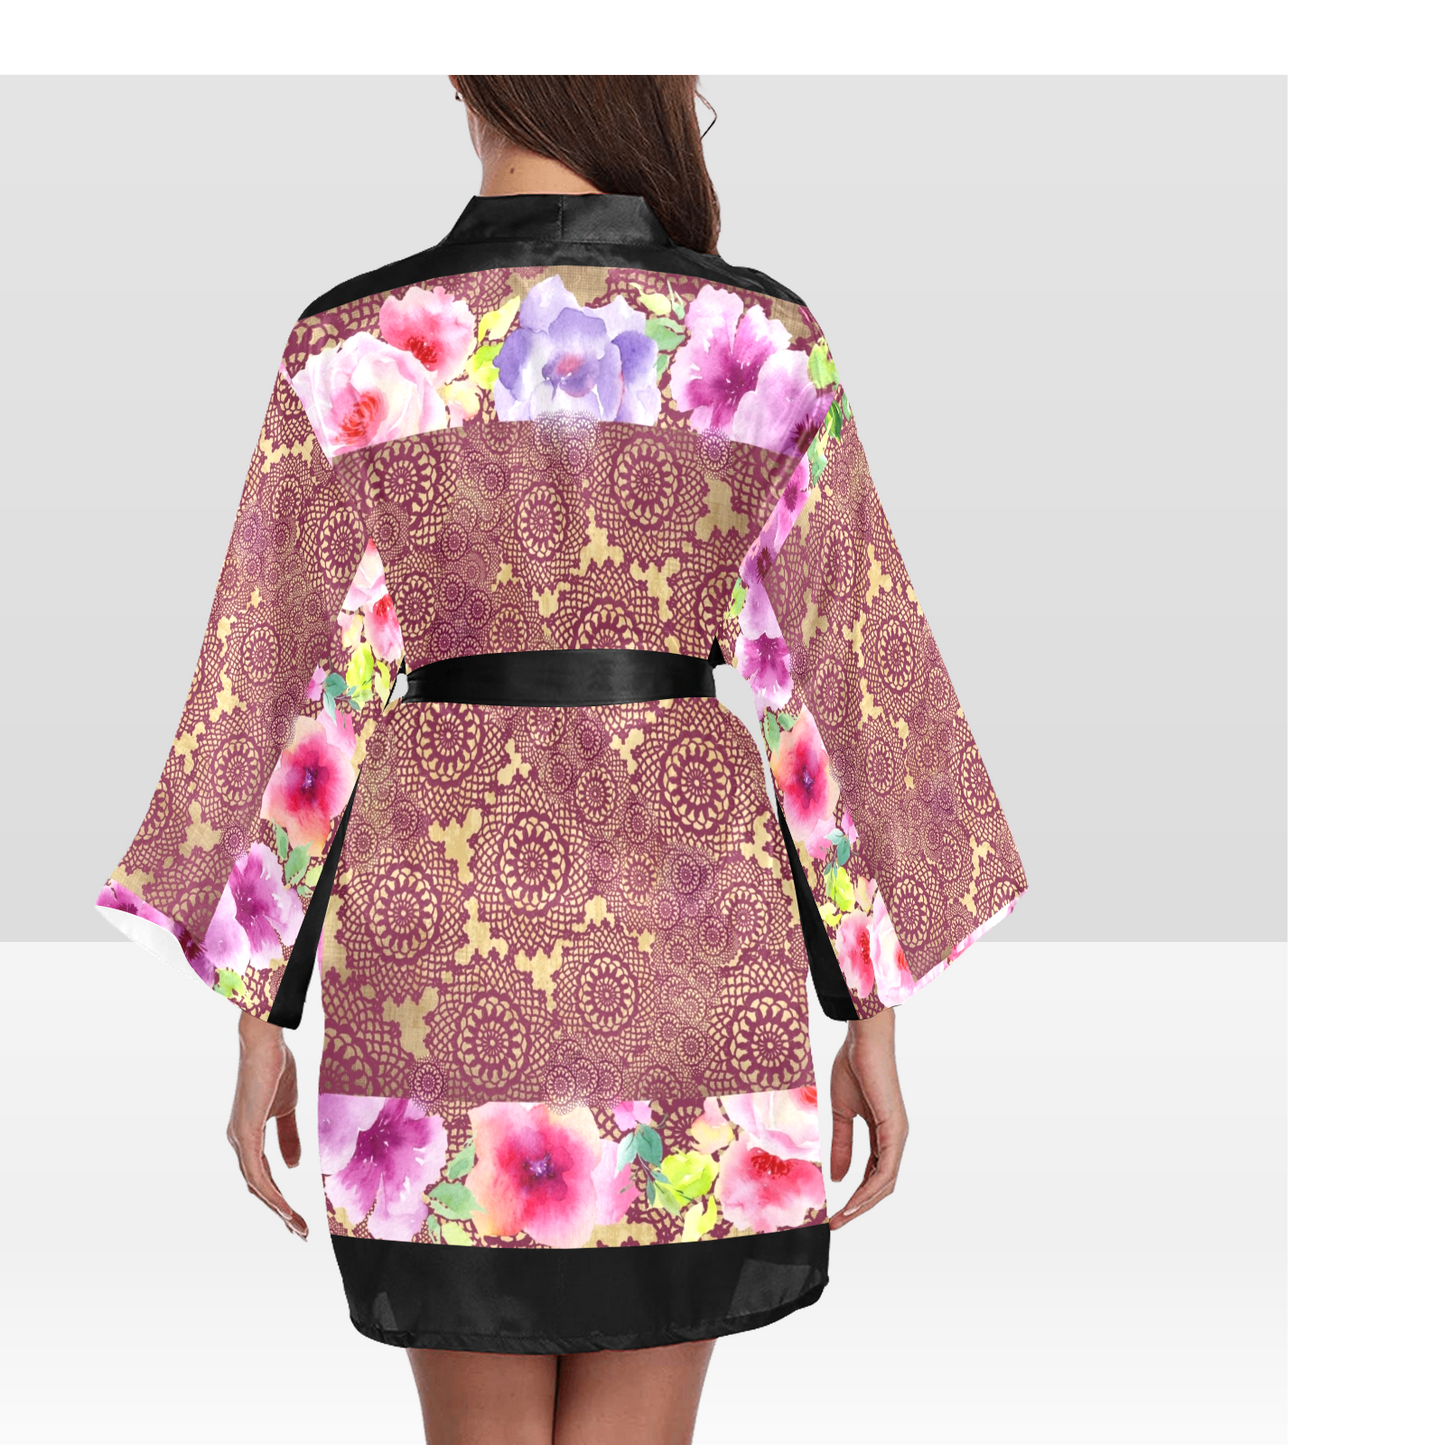 Victorian Lace Kimono Robe, Black or White Trim, Sizes XS to 2XL, Design 13